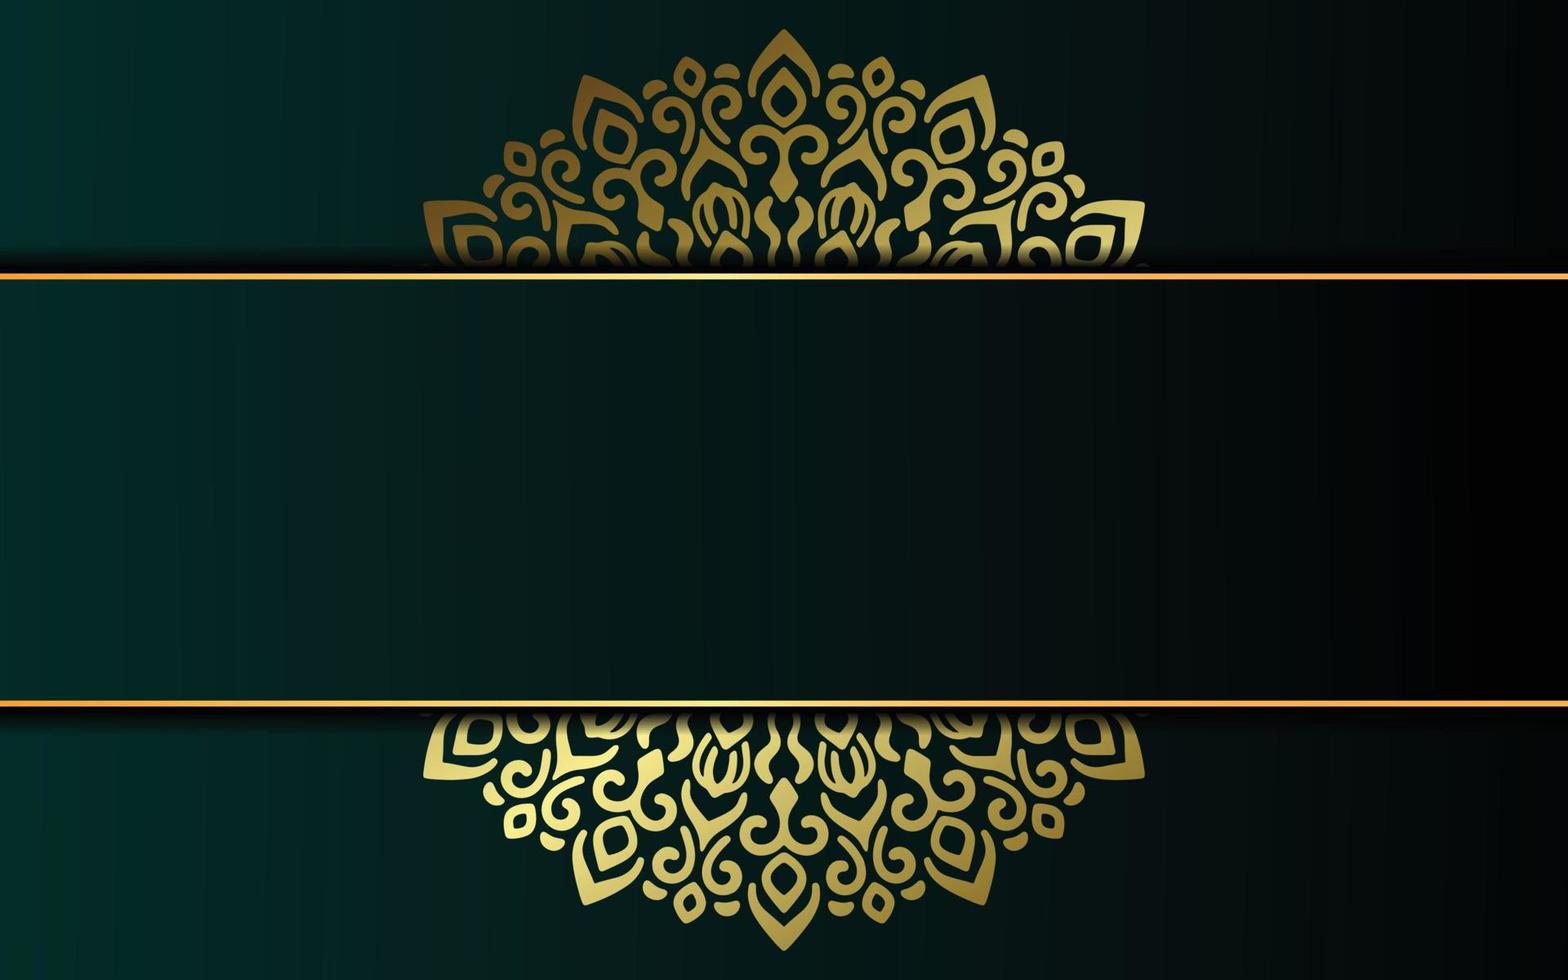 sfondo ornato di lusso oro mandala per invito a nozze, copertina del libro vettore